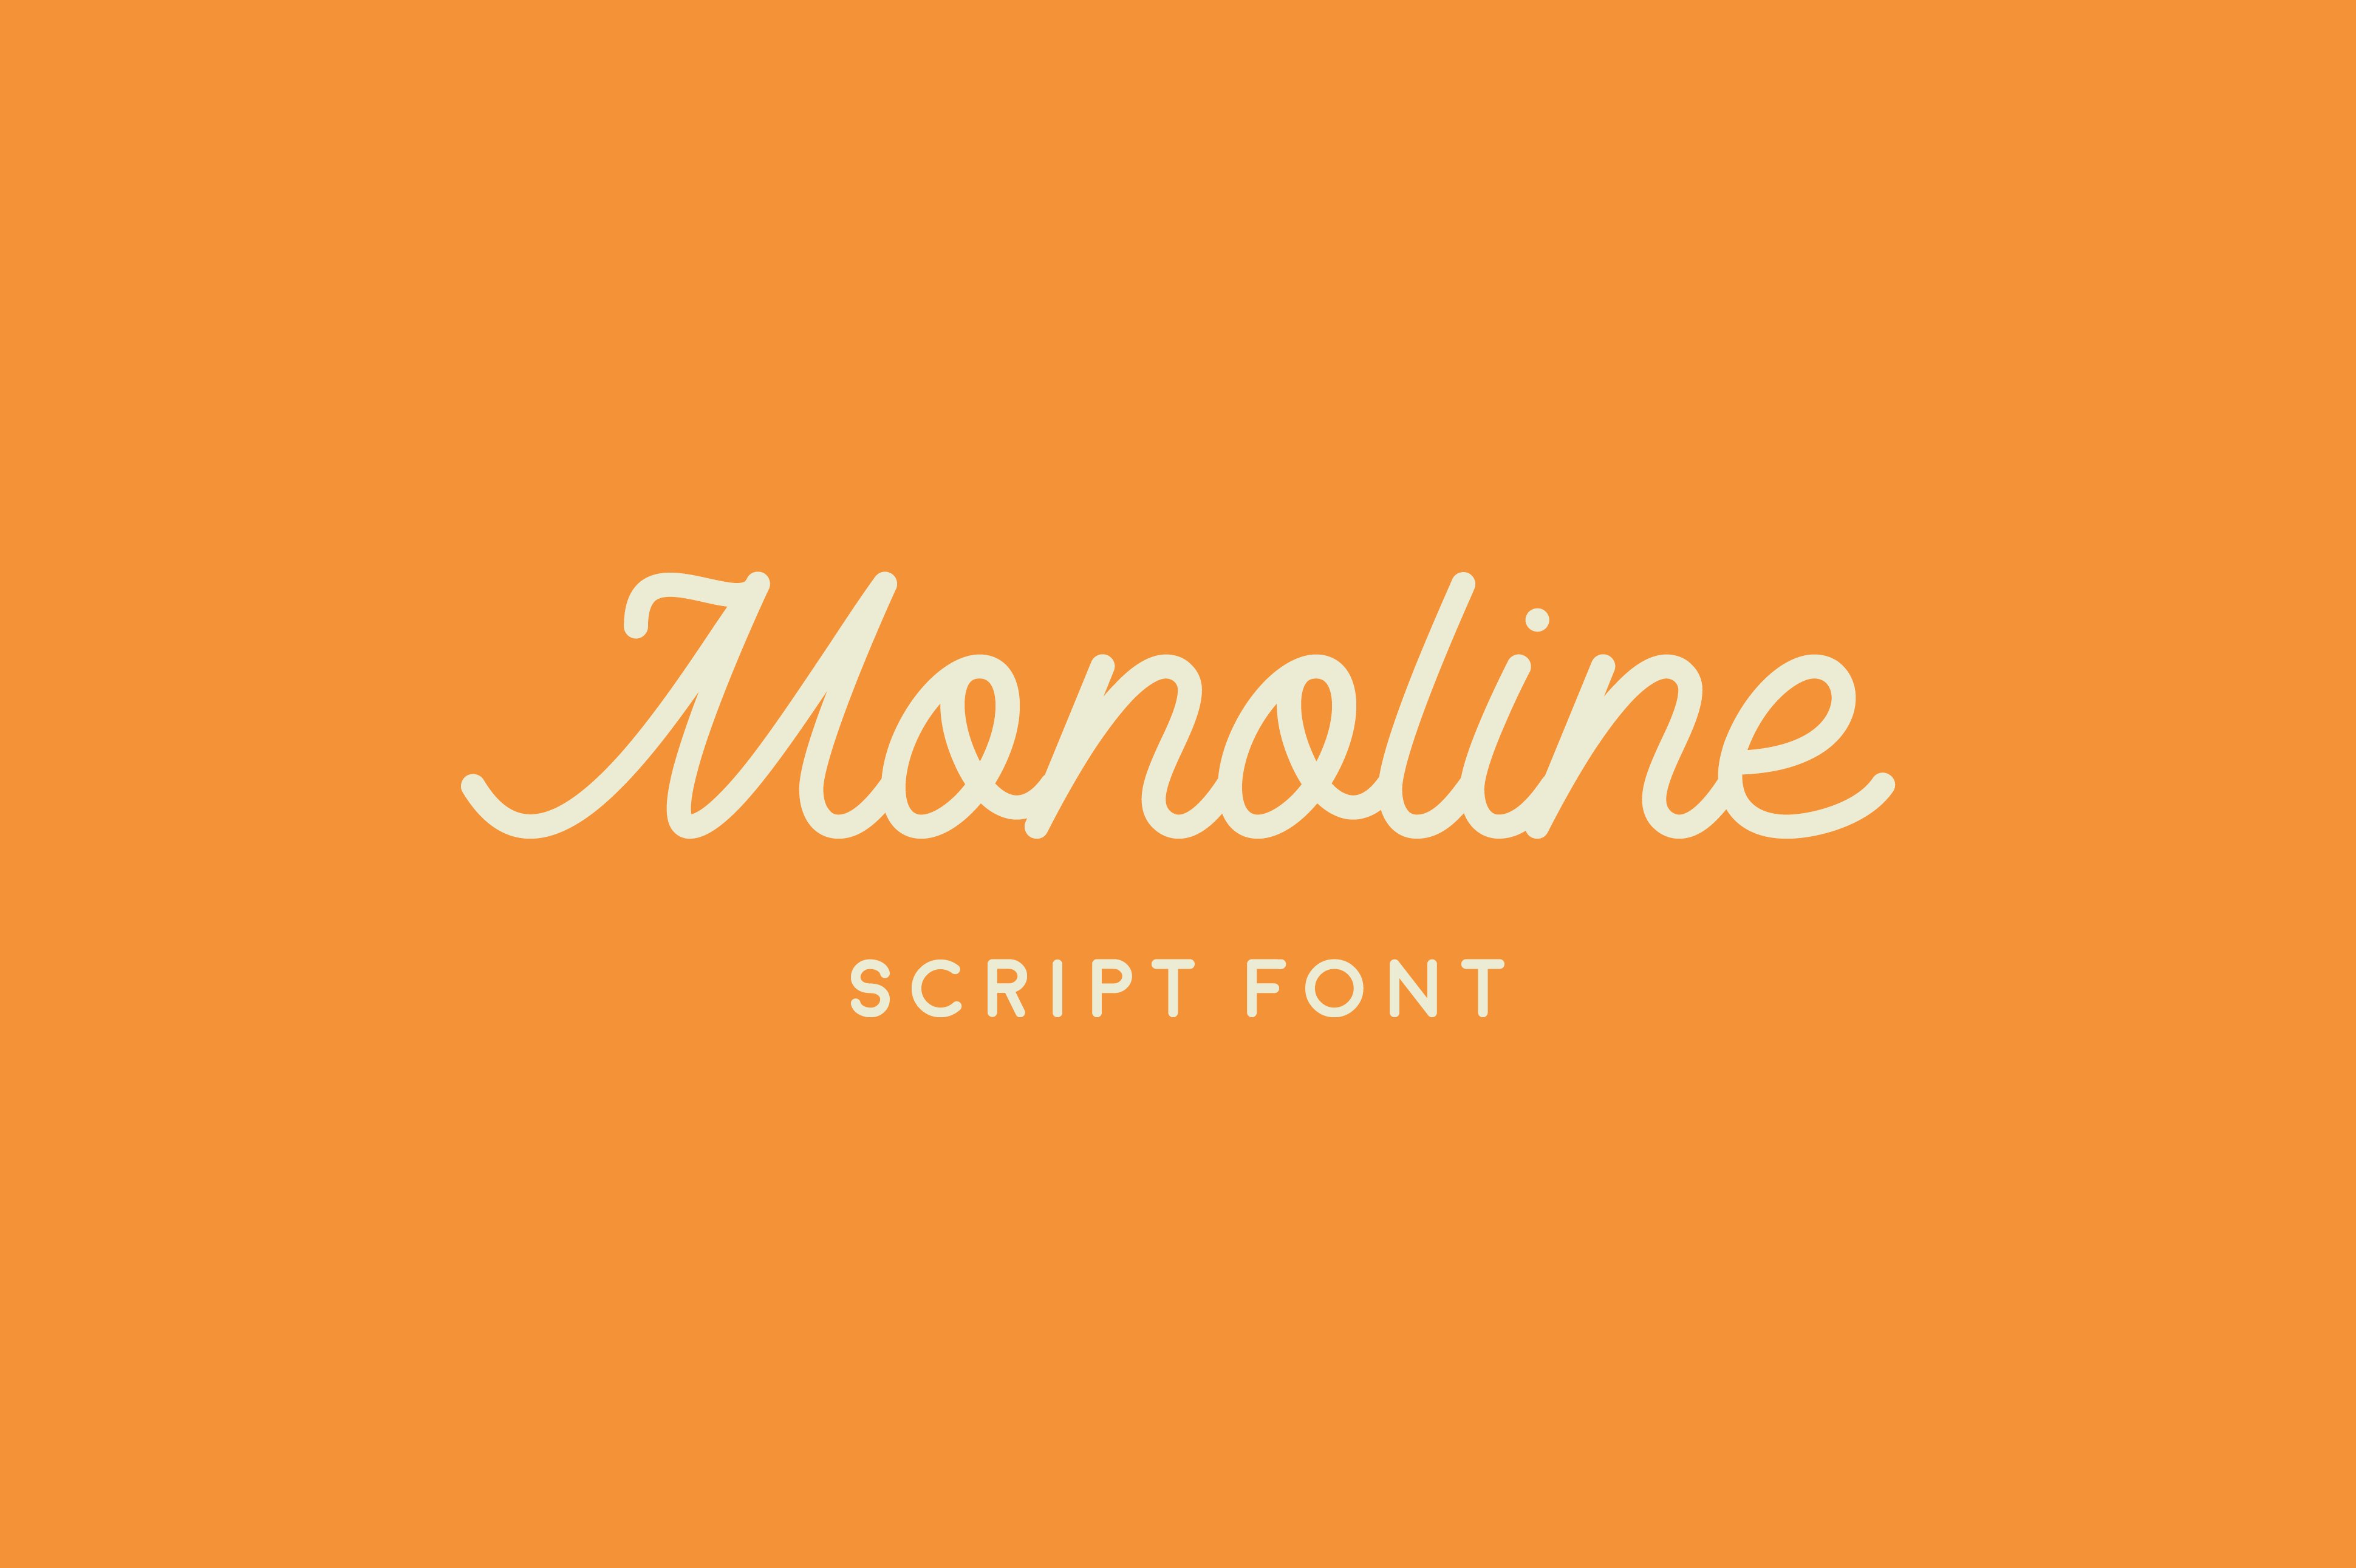 Ejemplo de fuente Monoline Script